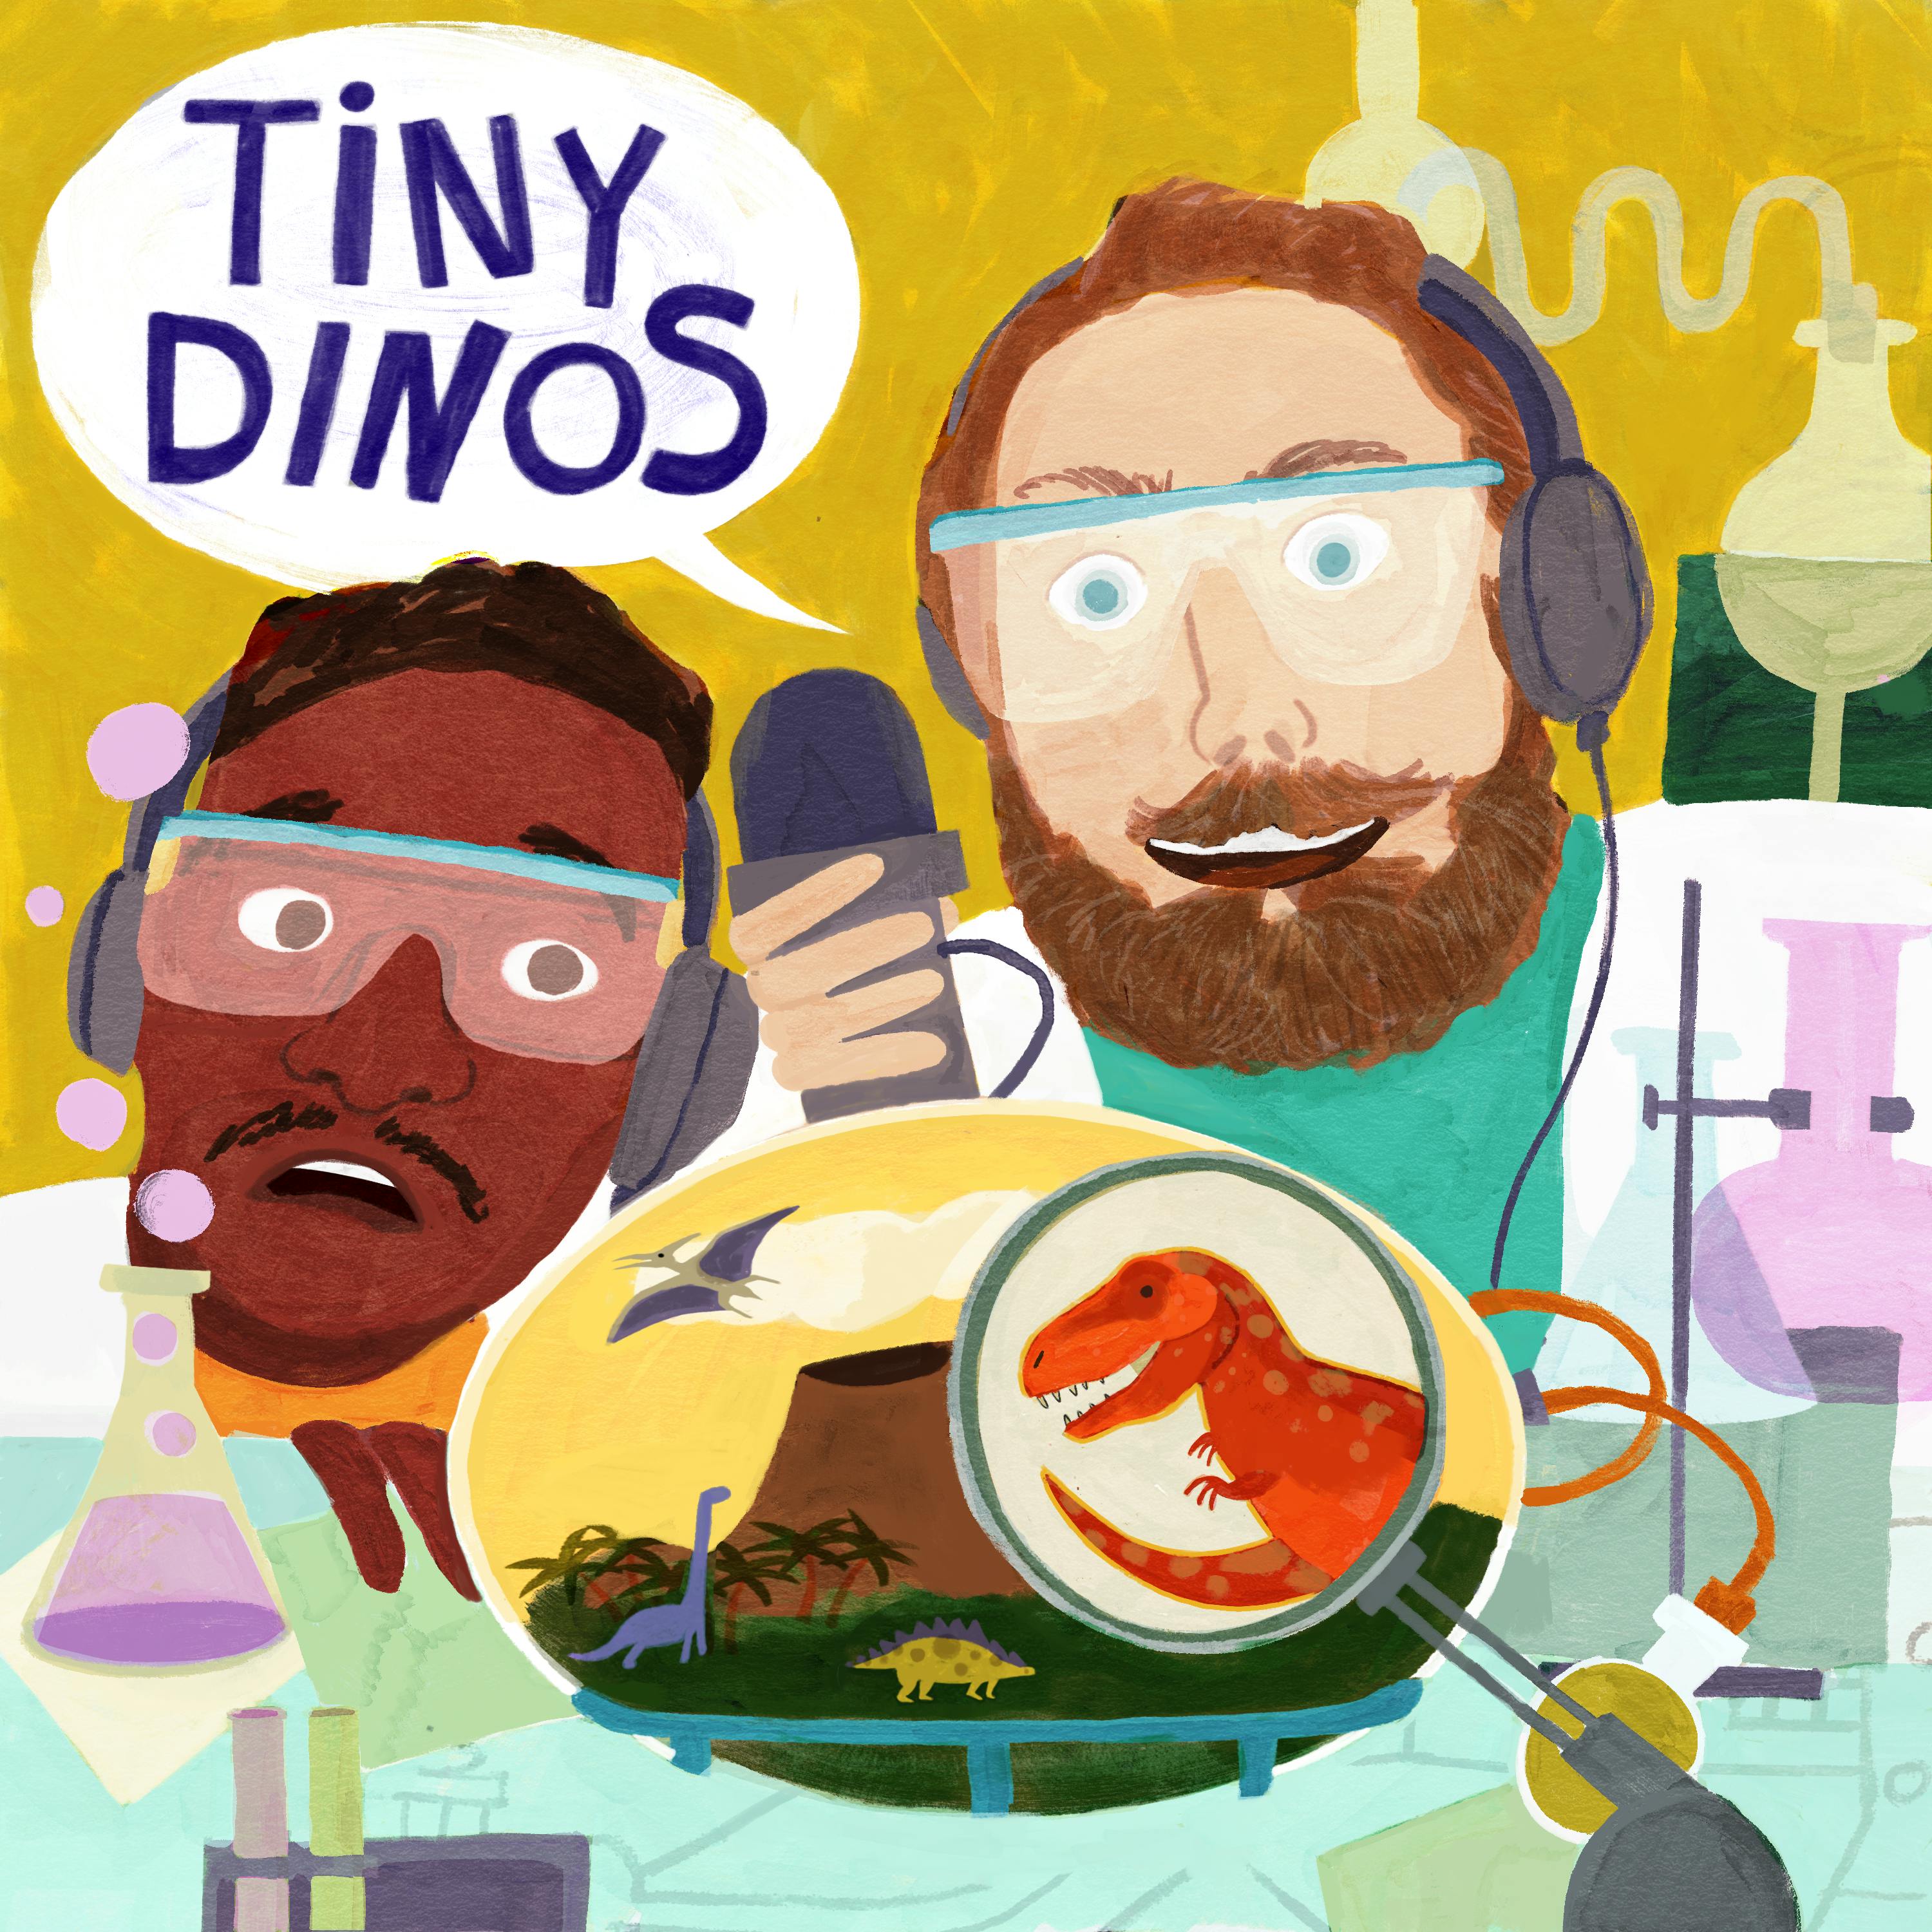 Tiny Dinos Image